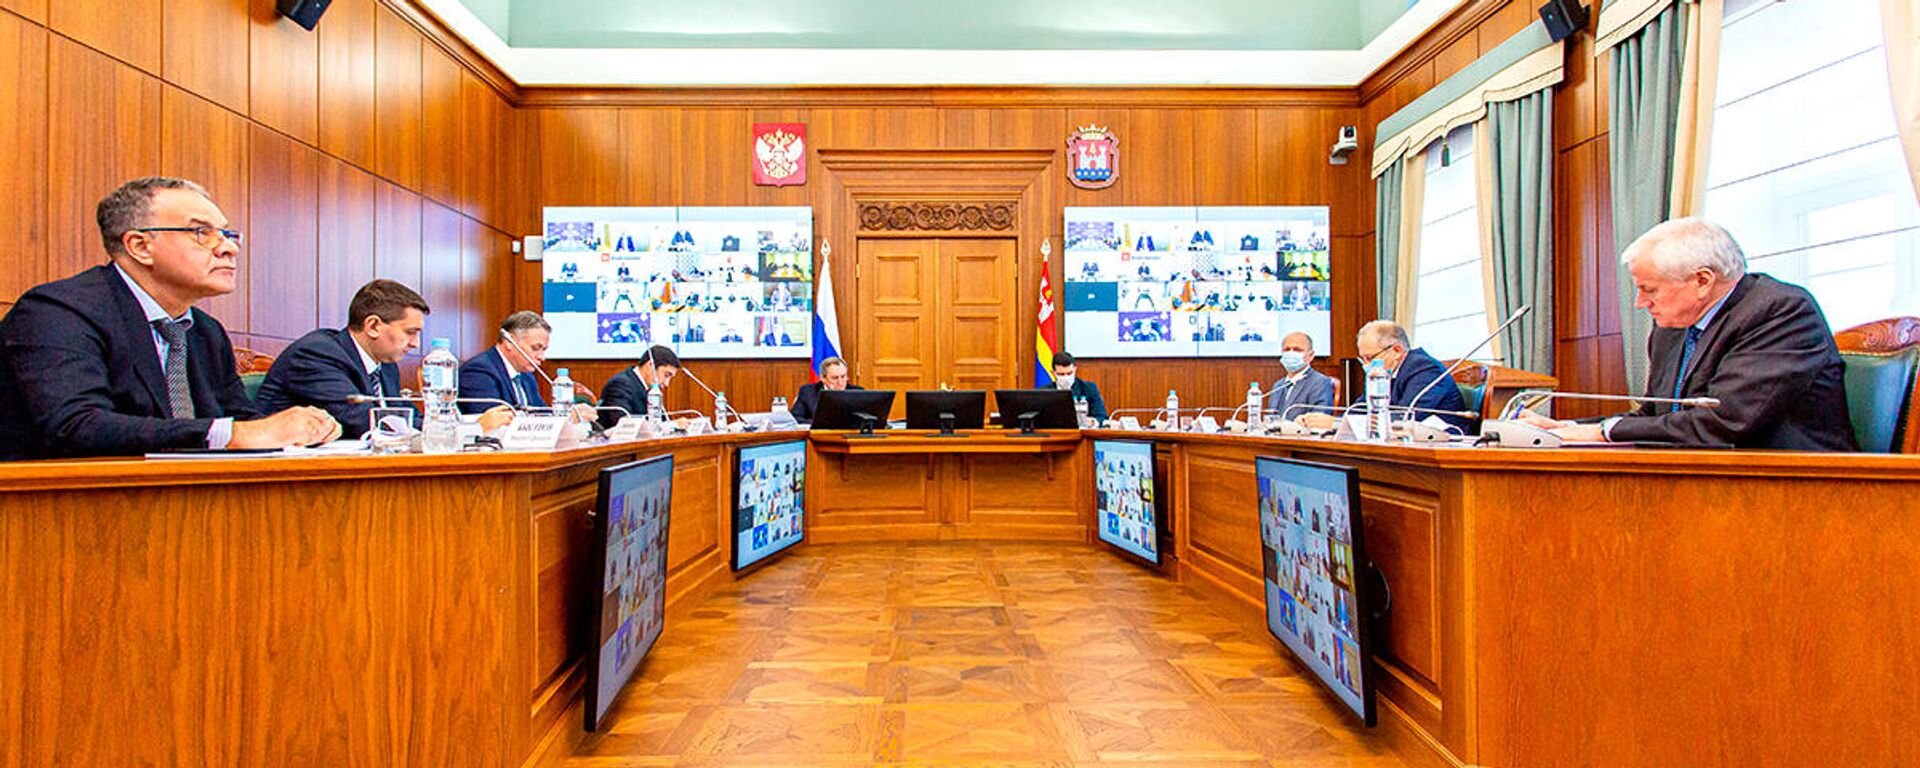 Заседание Правительственной комиссии по обеспечению безопасности электроснабжения Калининградской области  - Sputnik Латвия, 1920, 25.10.2021